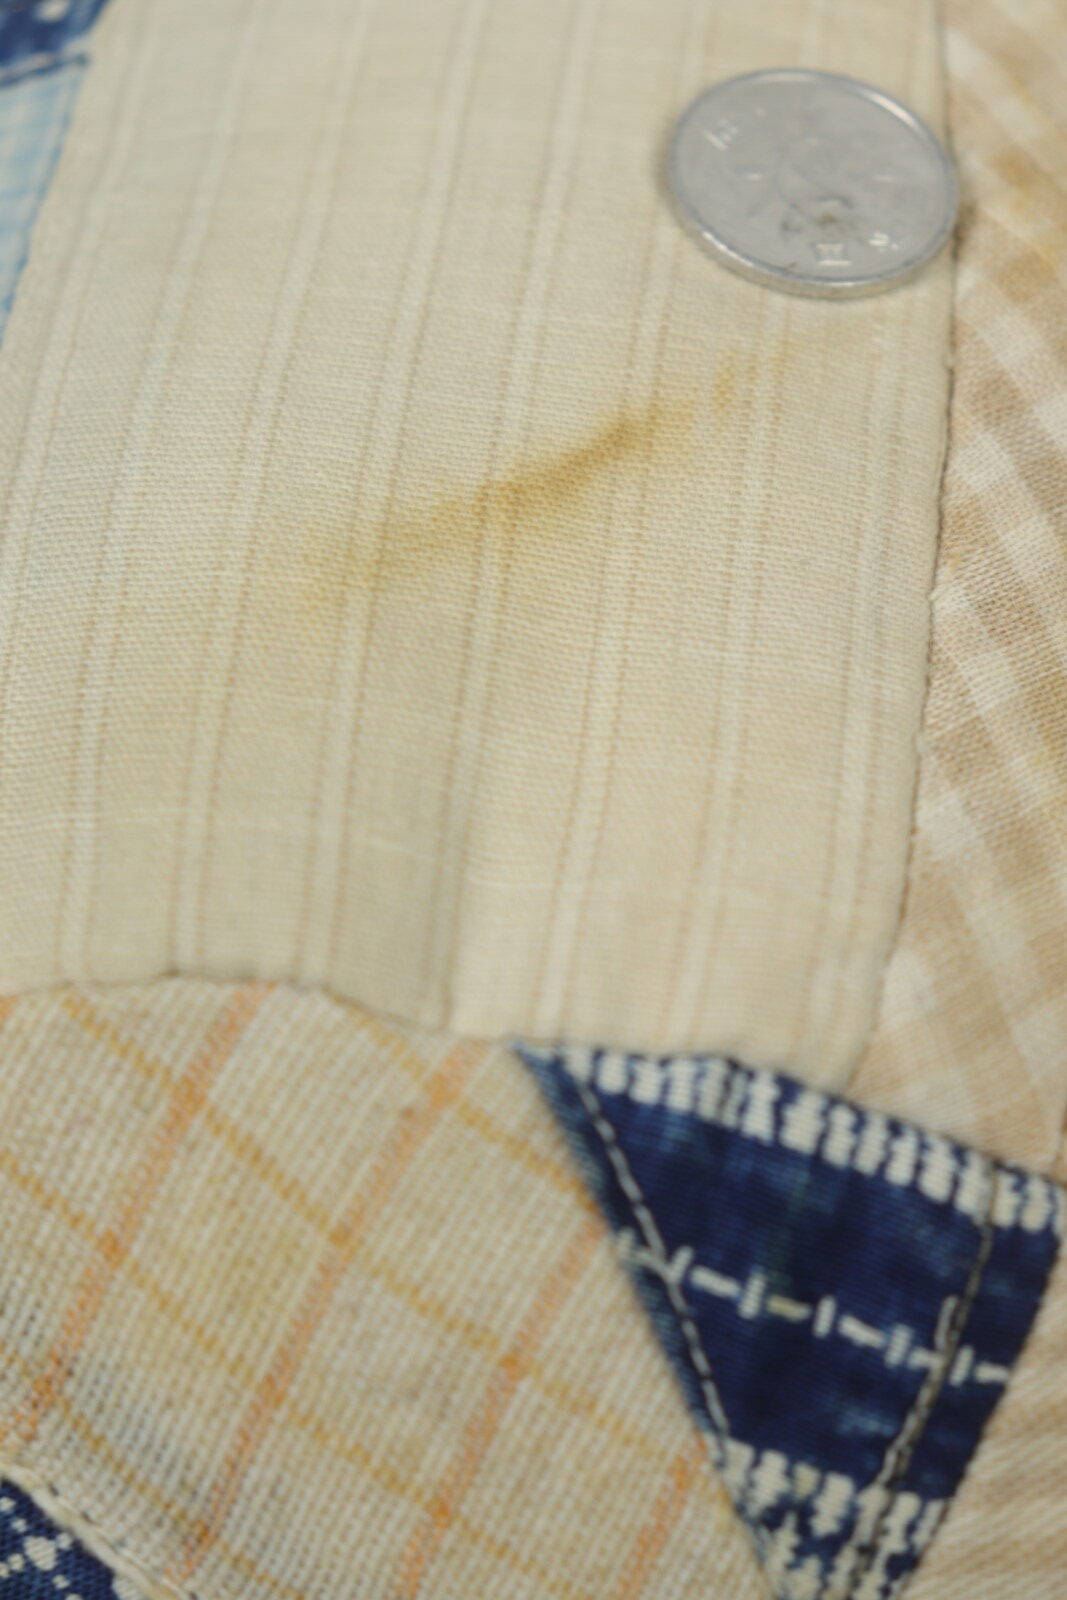 vintage,crazy quilt,cushion,BROWN.remake,indigo fabric,USA